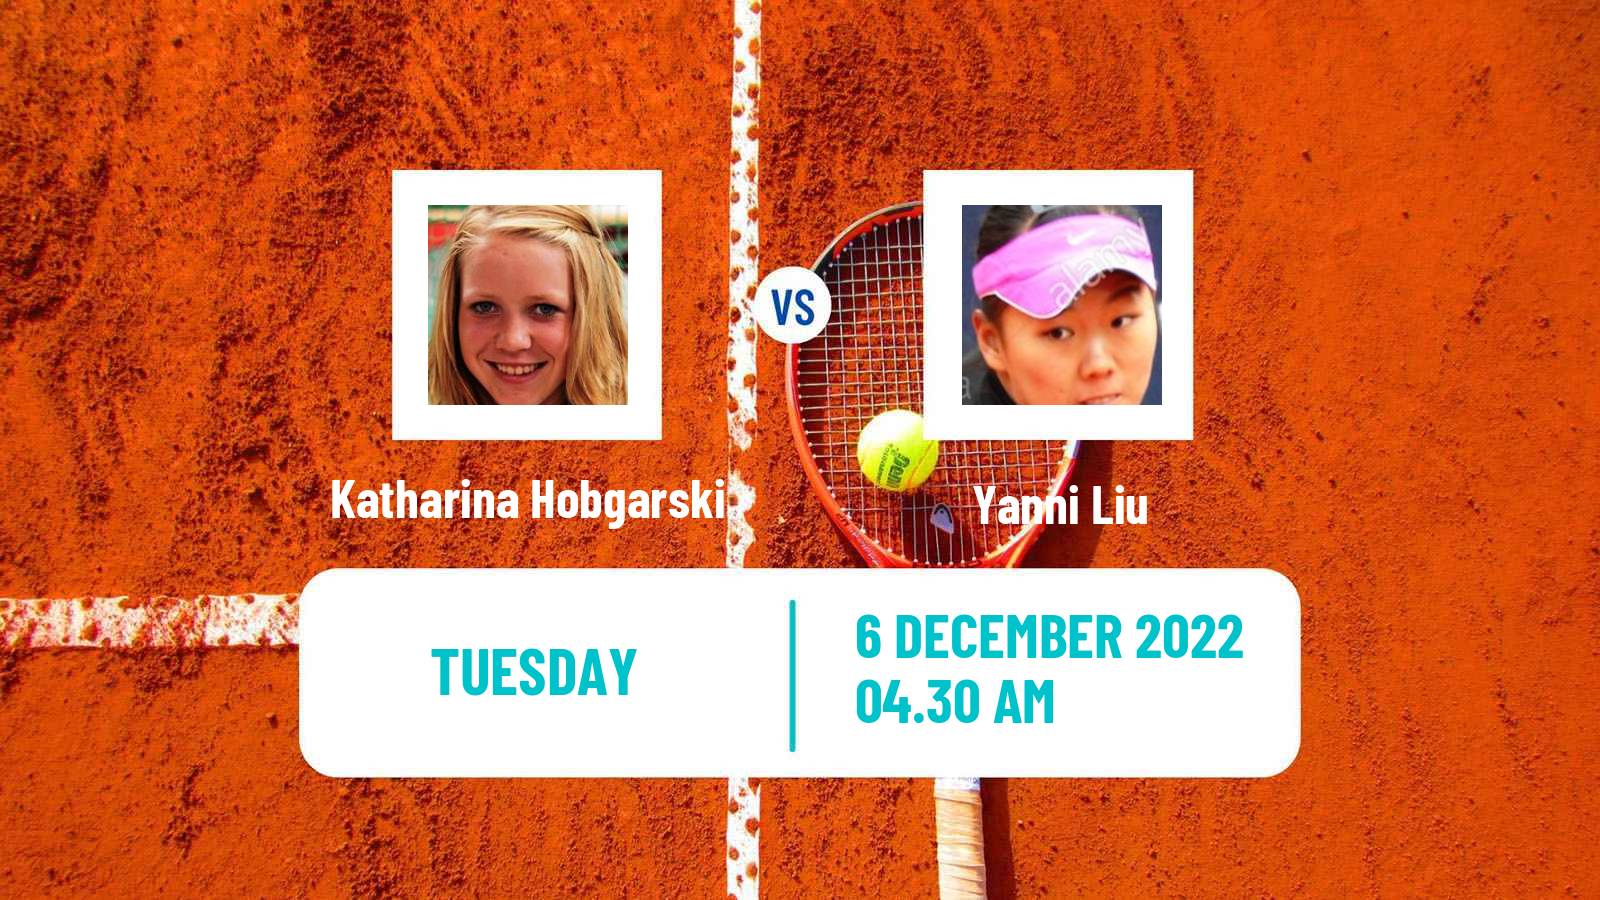 Tennis ITF Tournaments Katharina Hobgarski - Yanni Liu